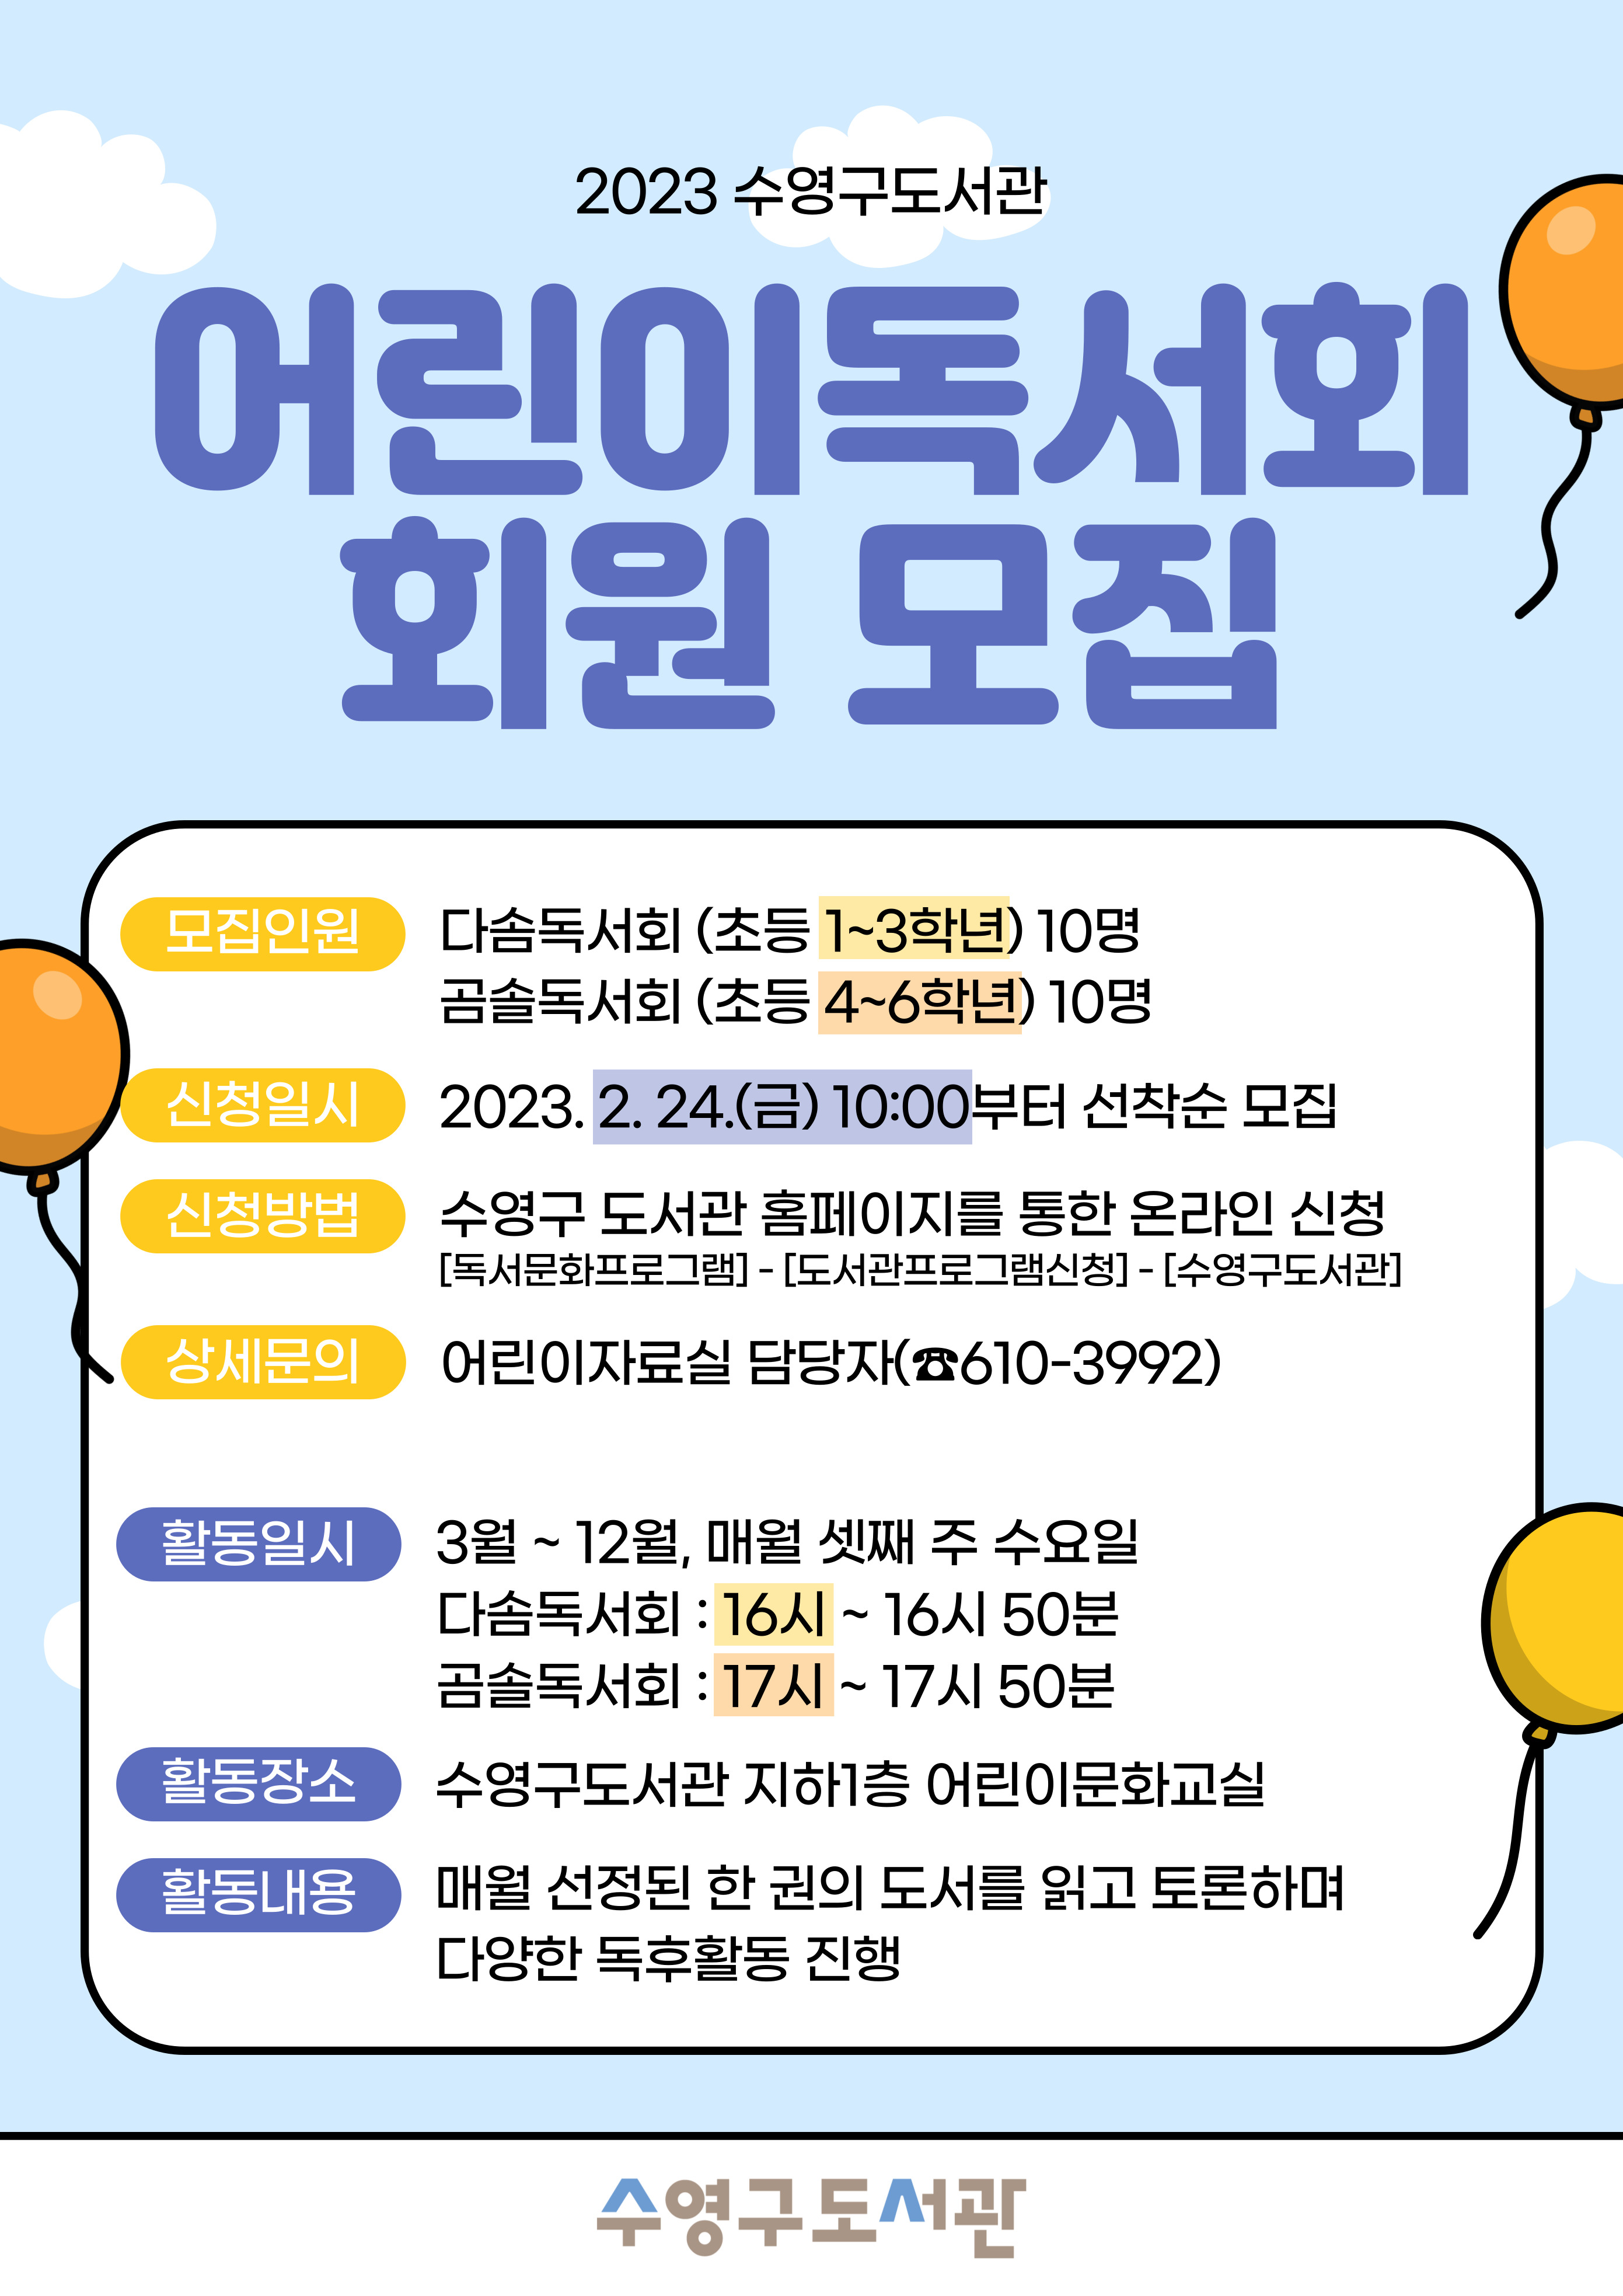 [어린이독서회] 2023년 곰솔독서회(초등 4~6학년) 회원모집 1